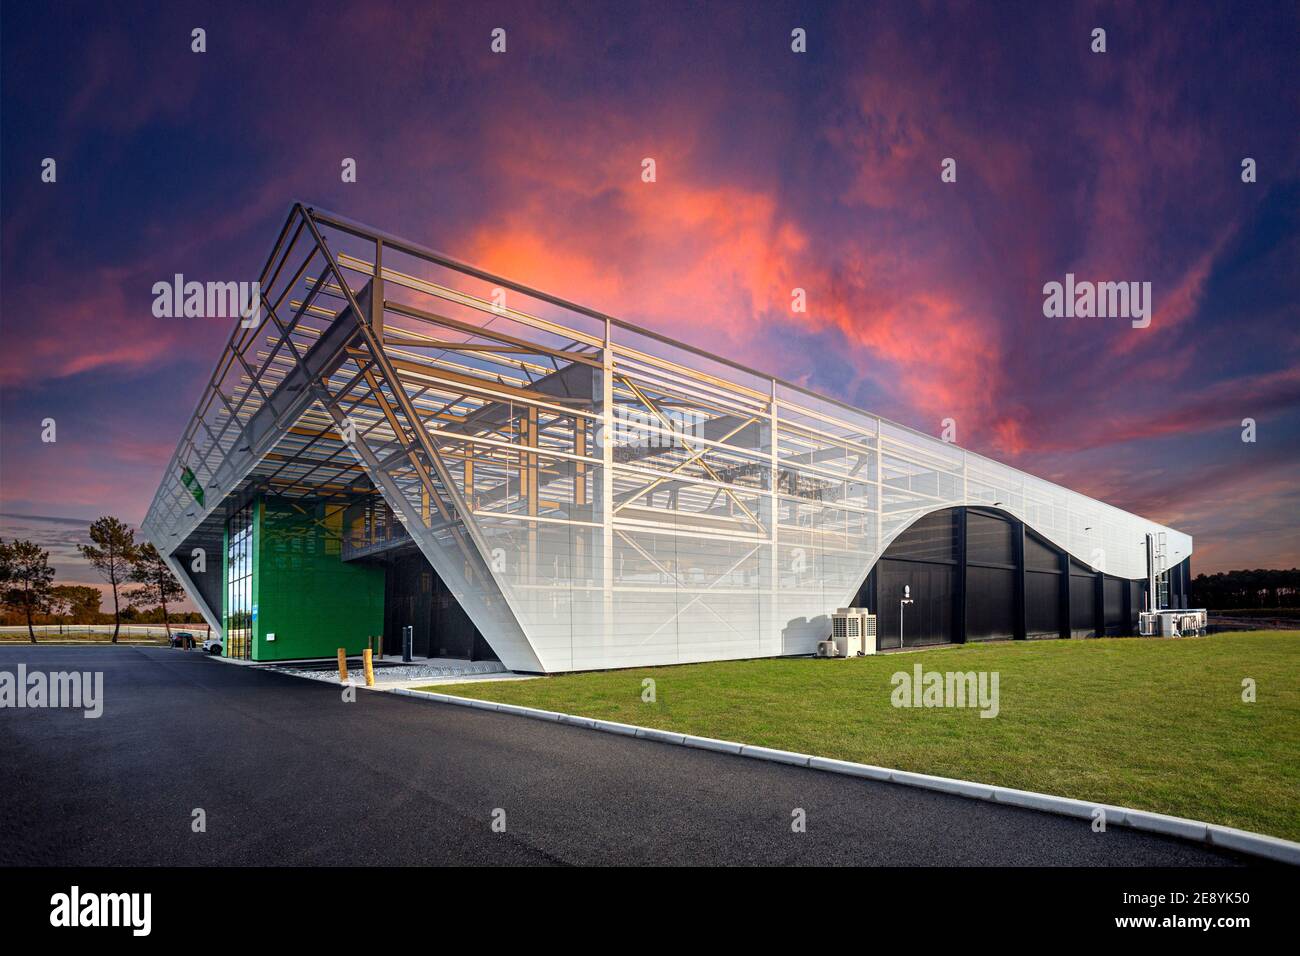 Edificio industrial que muestra su estructura metálica por transparencia (fotomontaje). Foto de stock